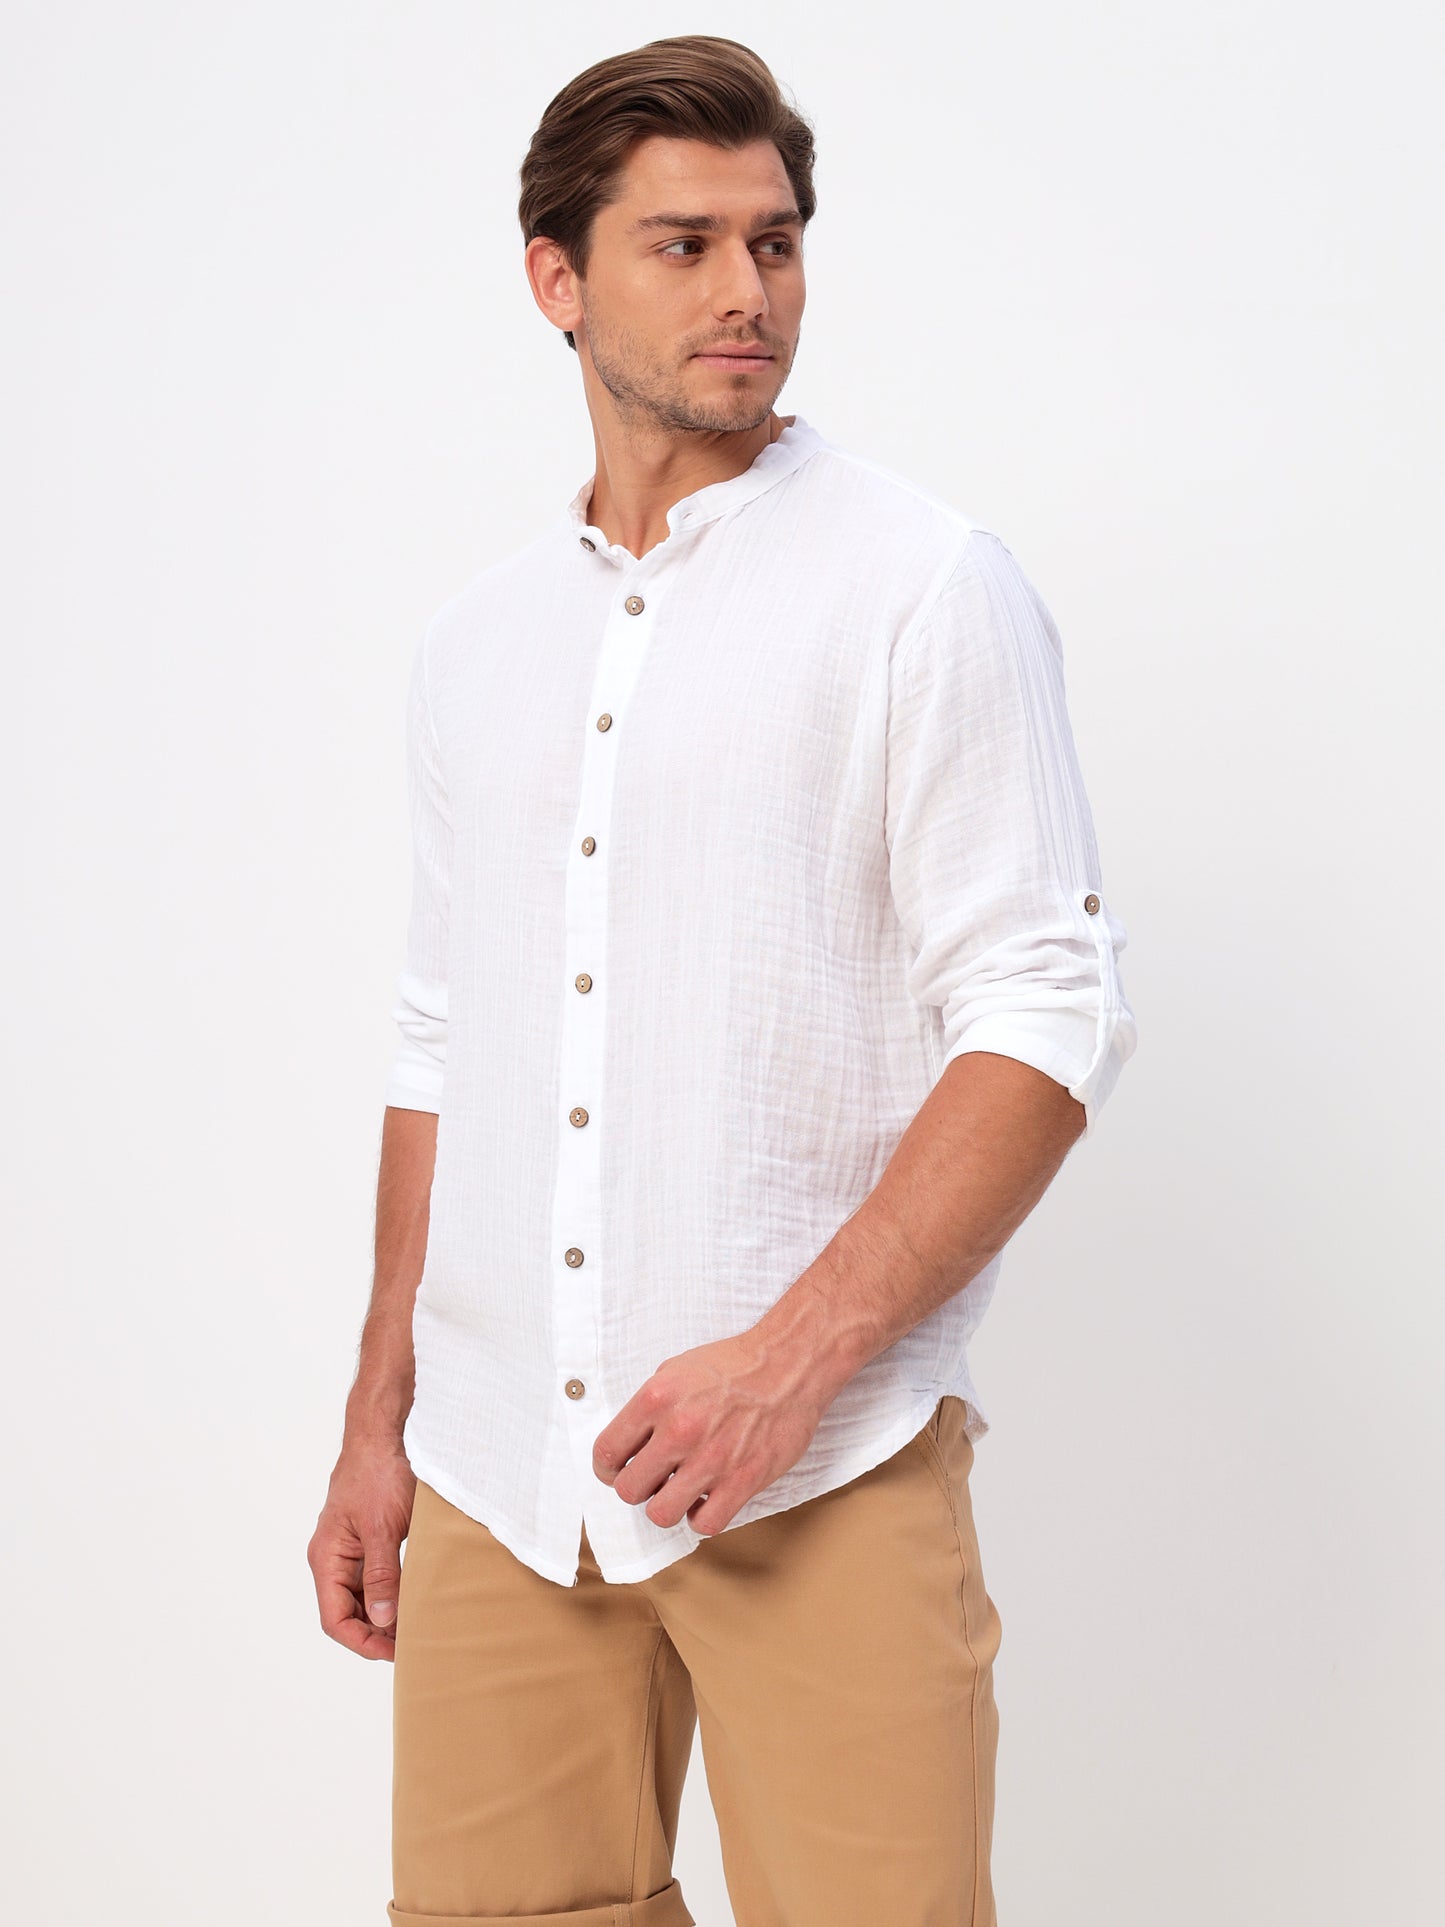 Herren Sommer Mode Hemd aus lässige Musselin Freizeit LMS-6467 White Weiß